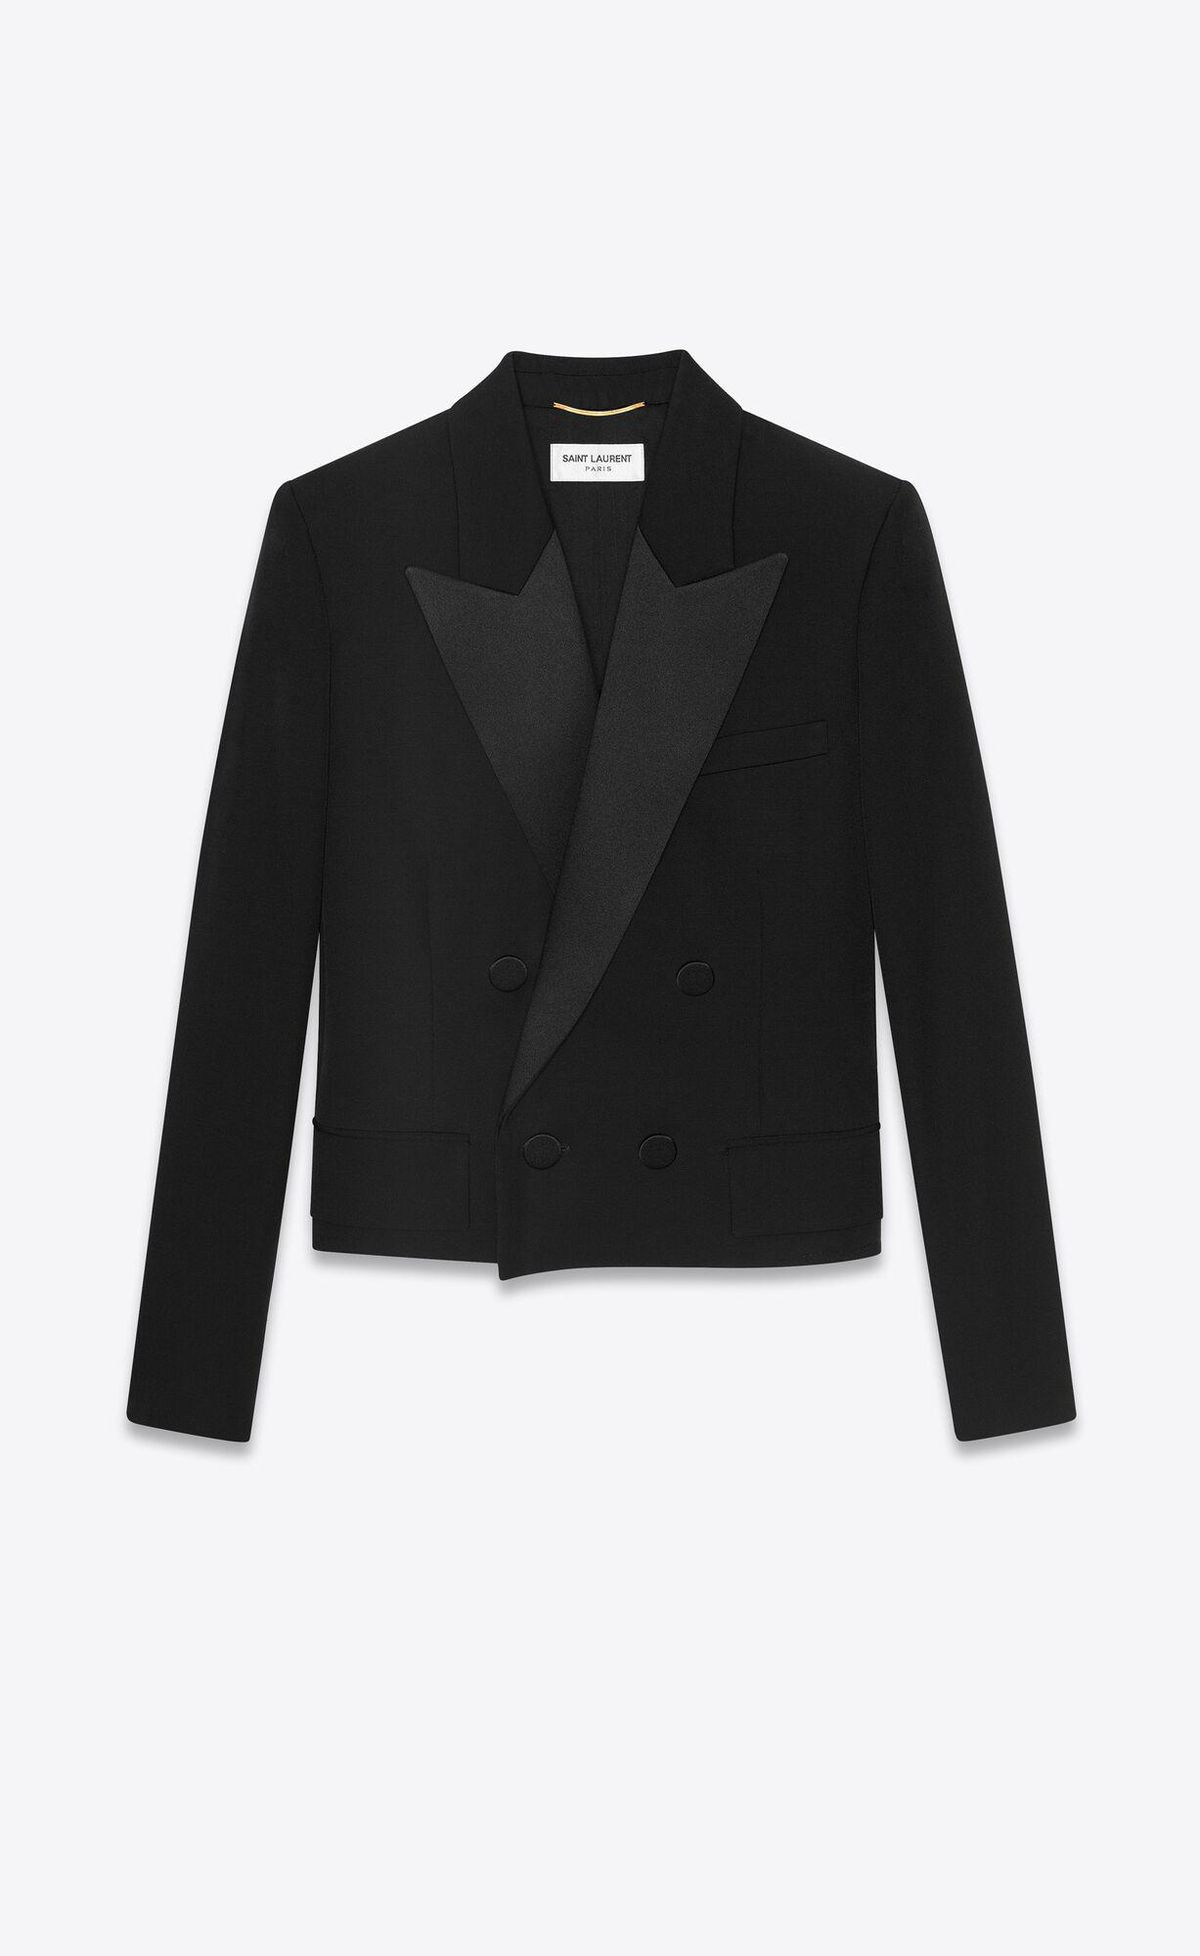 Saint Laurent Cropped Tuxedo jacket